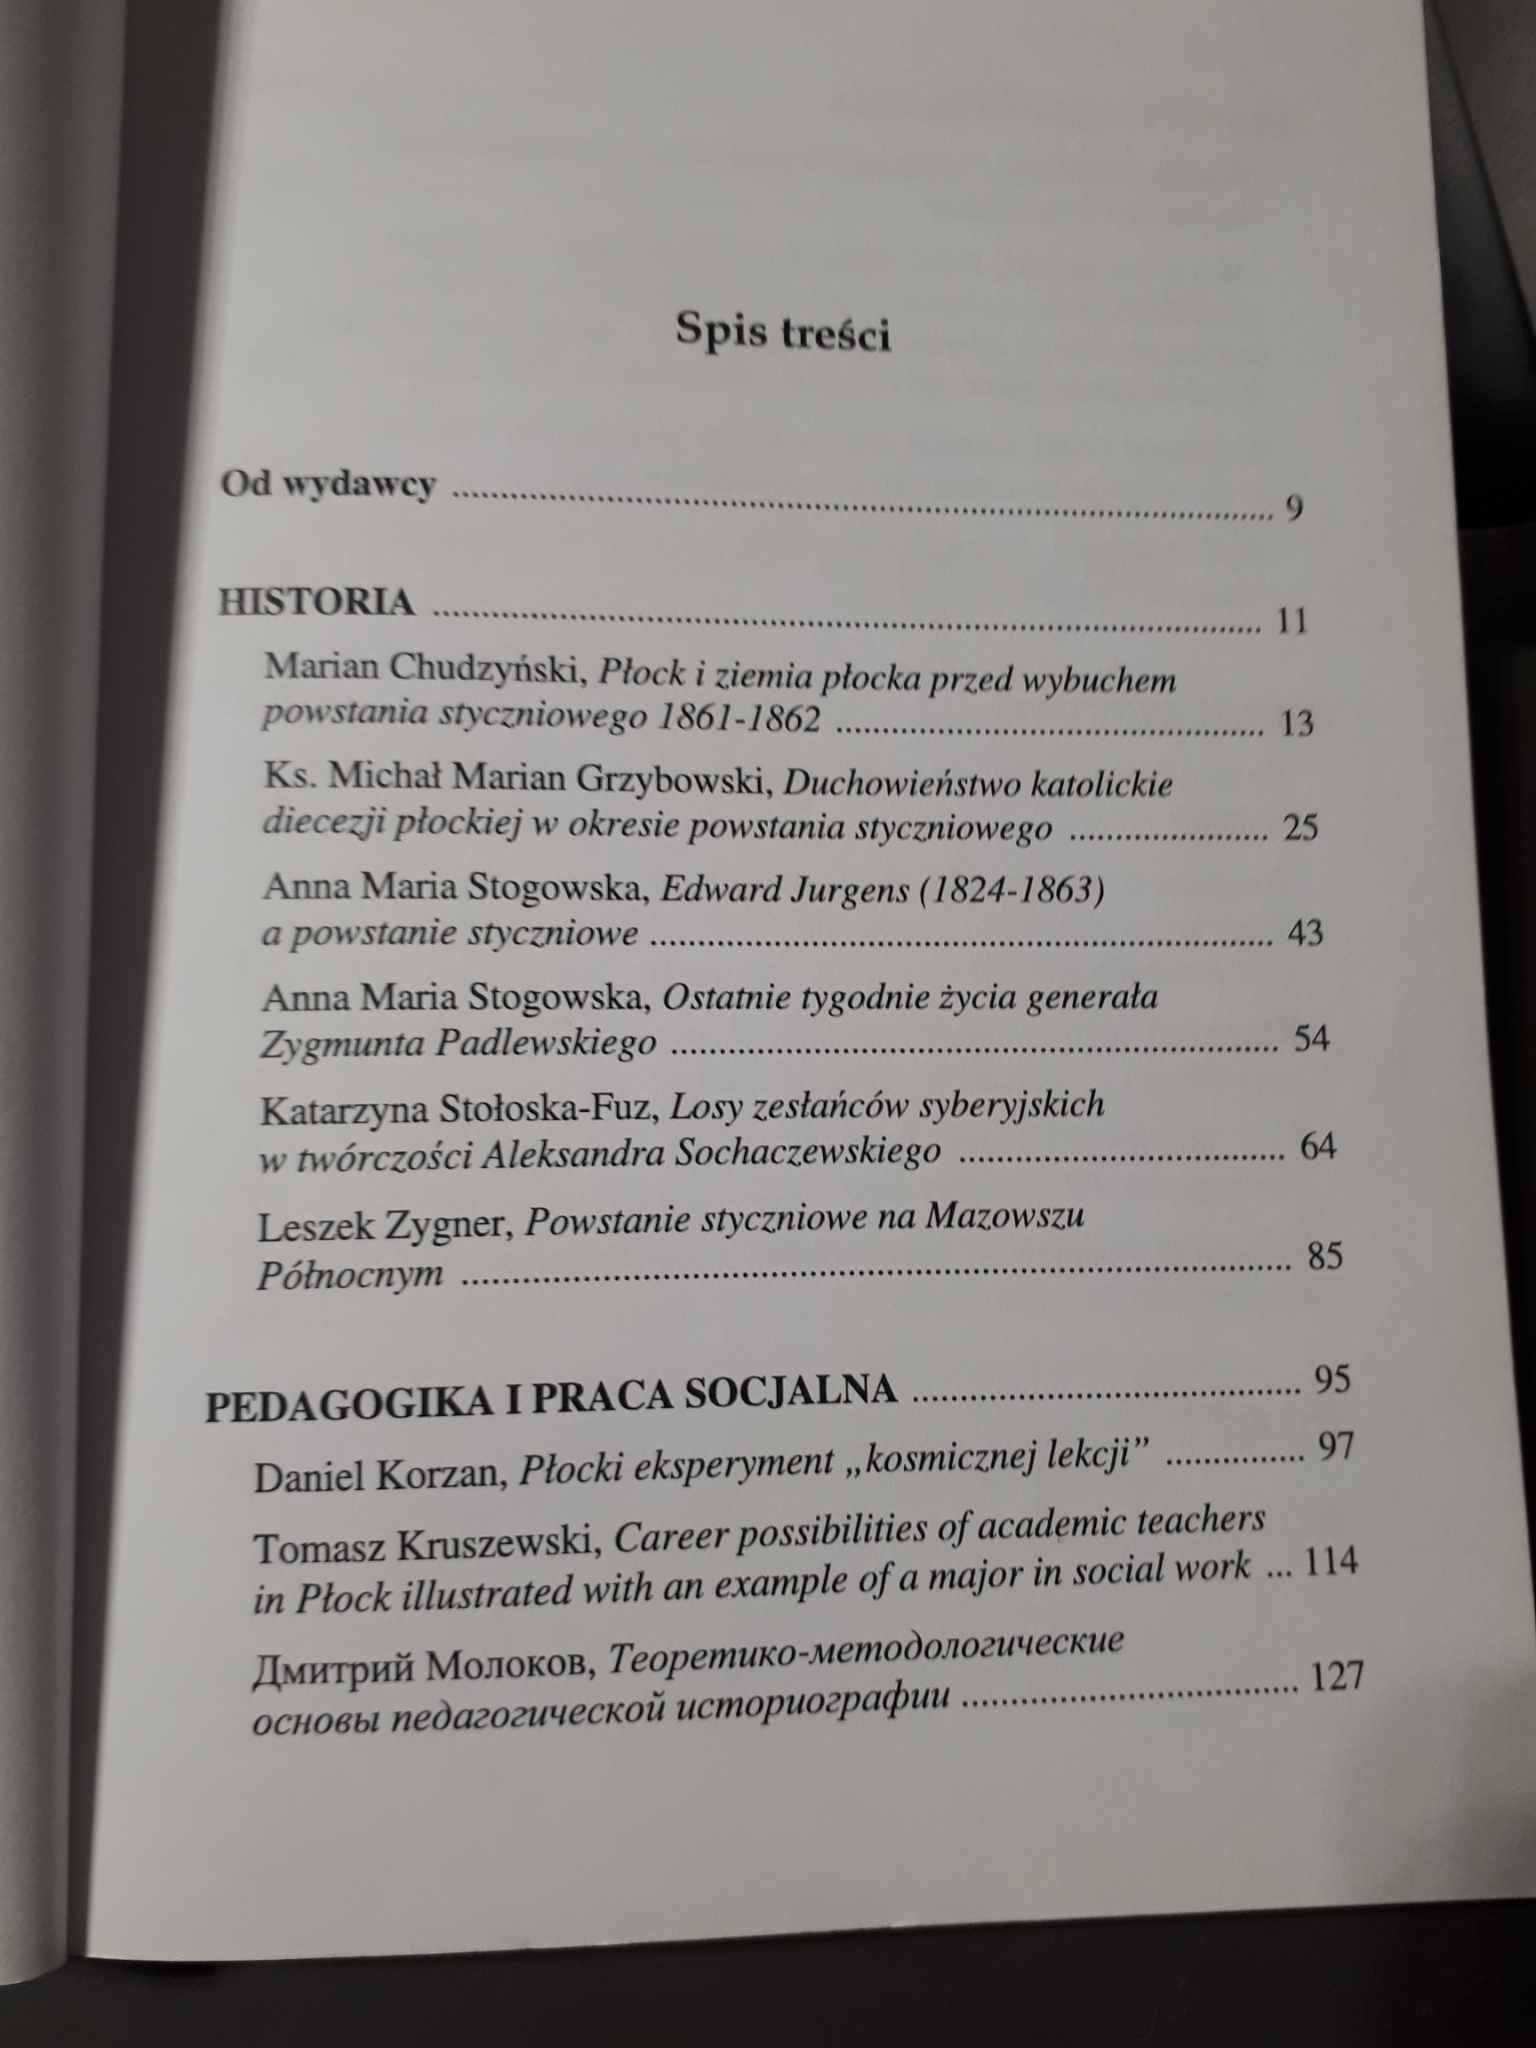 Rocznik Towarzystwa Naukowego Płockiego